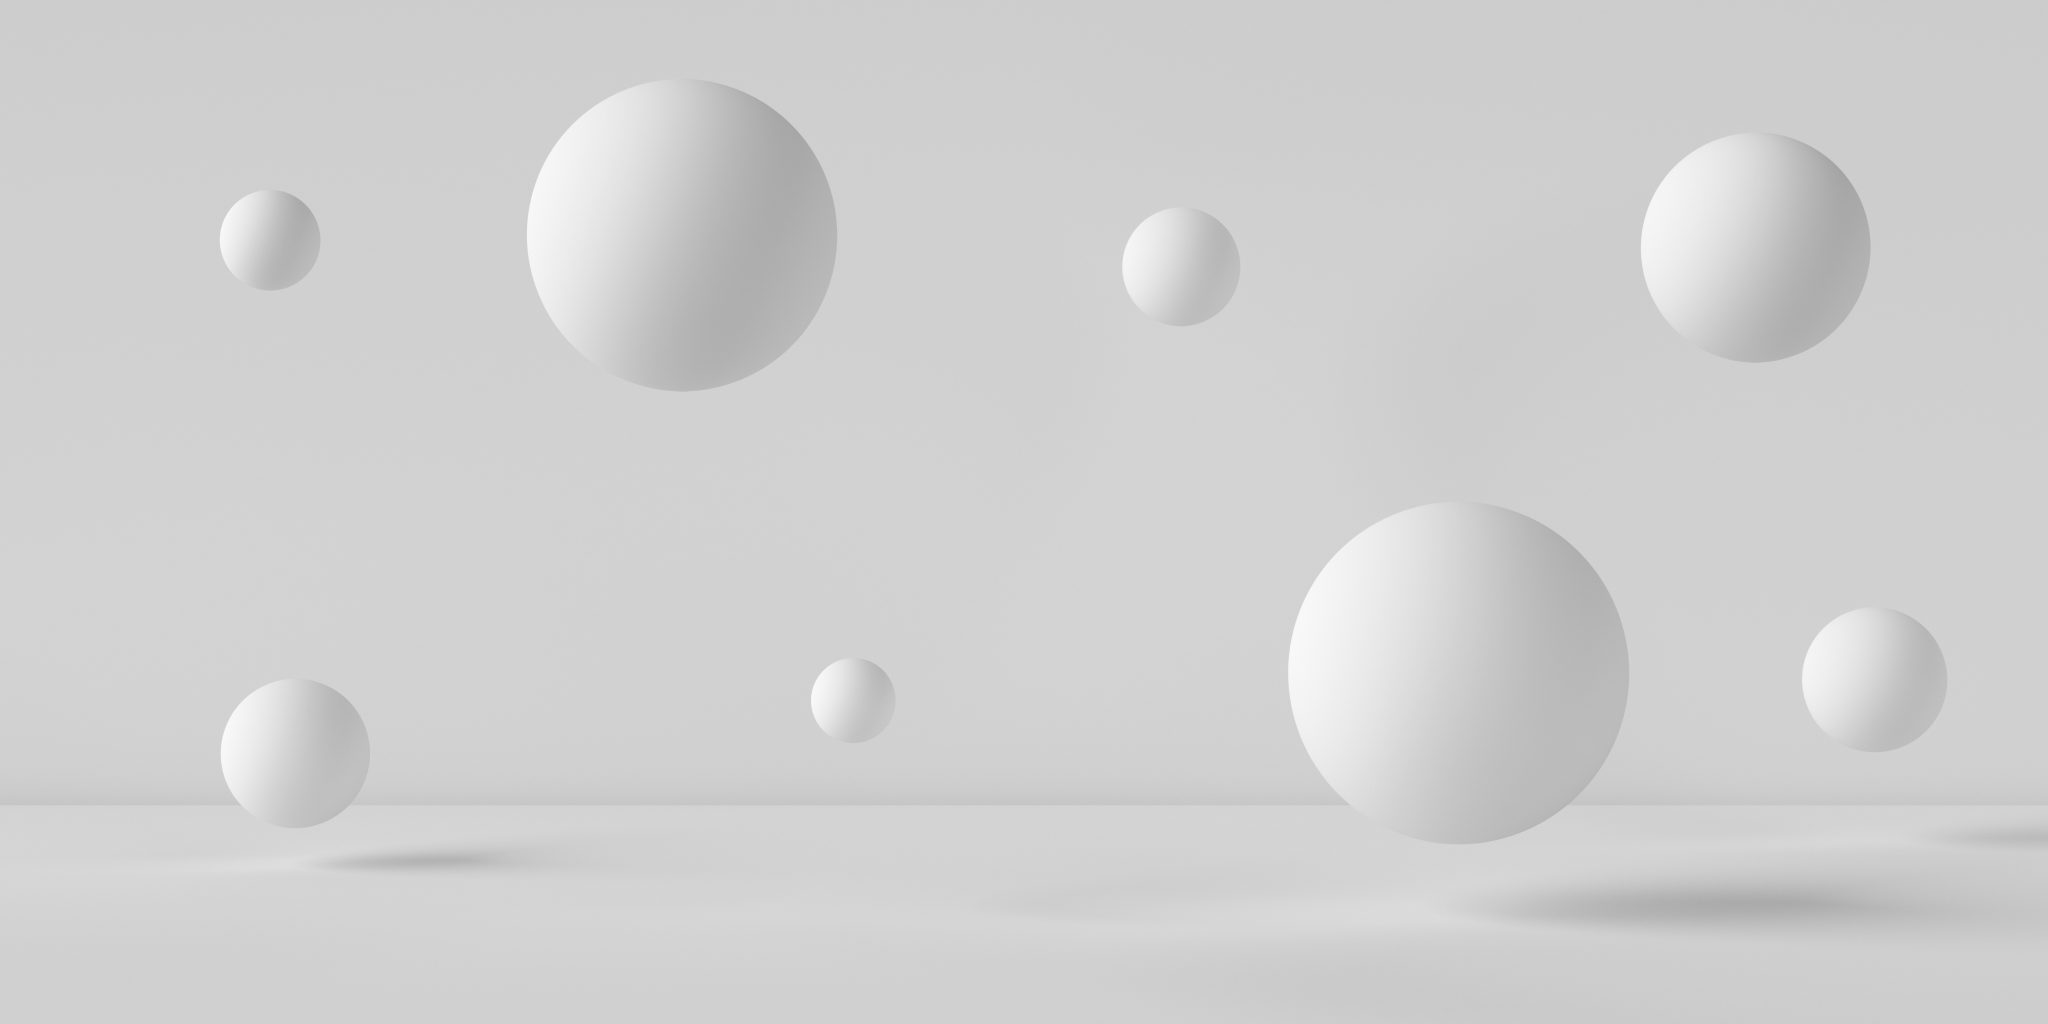 Image de sphères 3D blanches de formes différentes